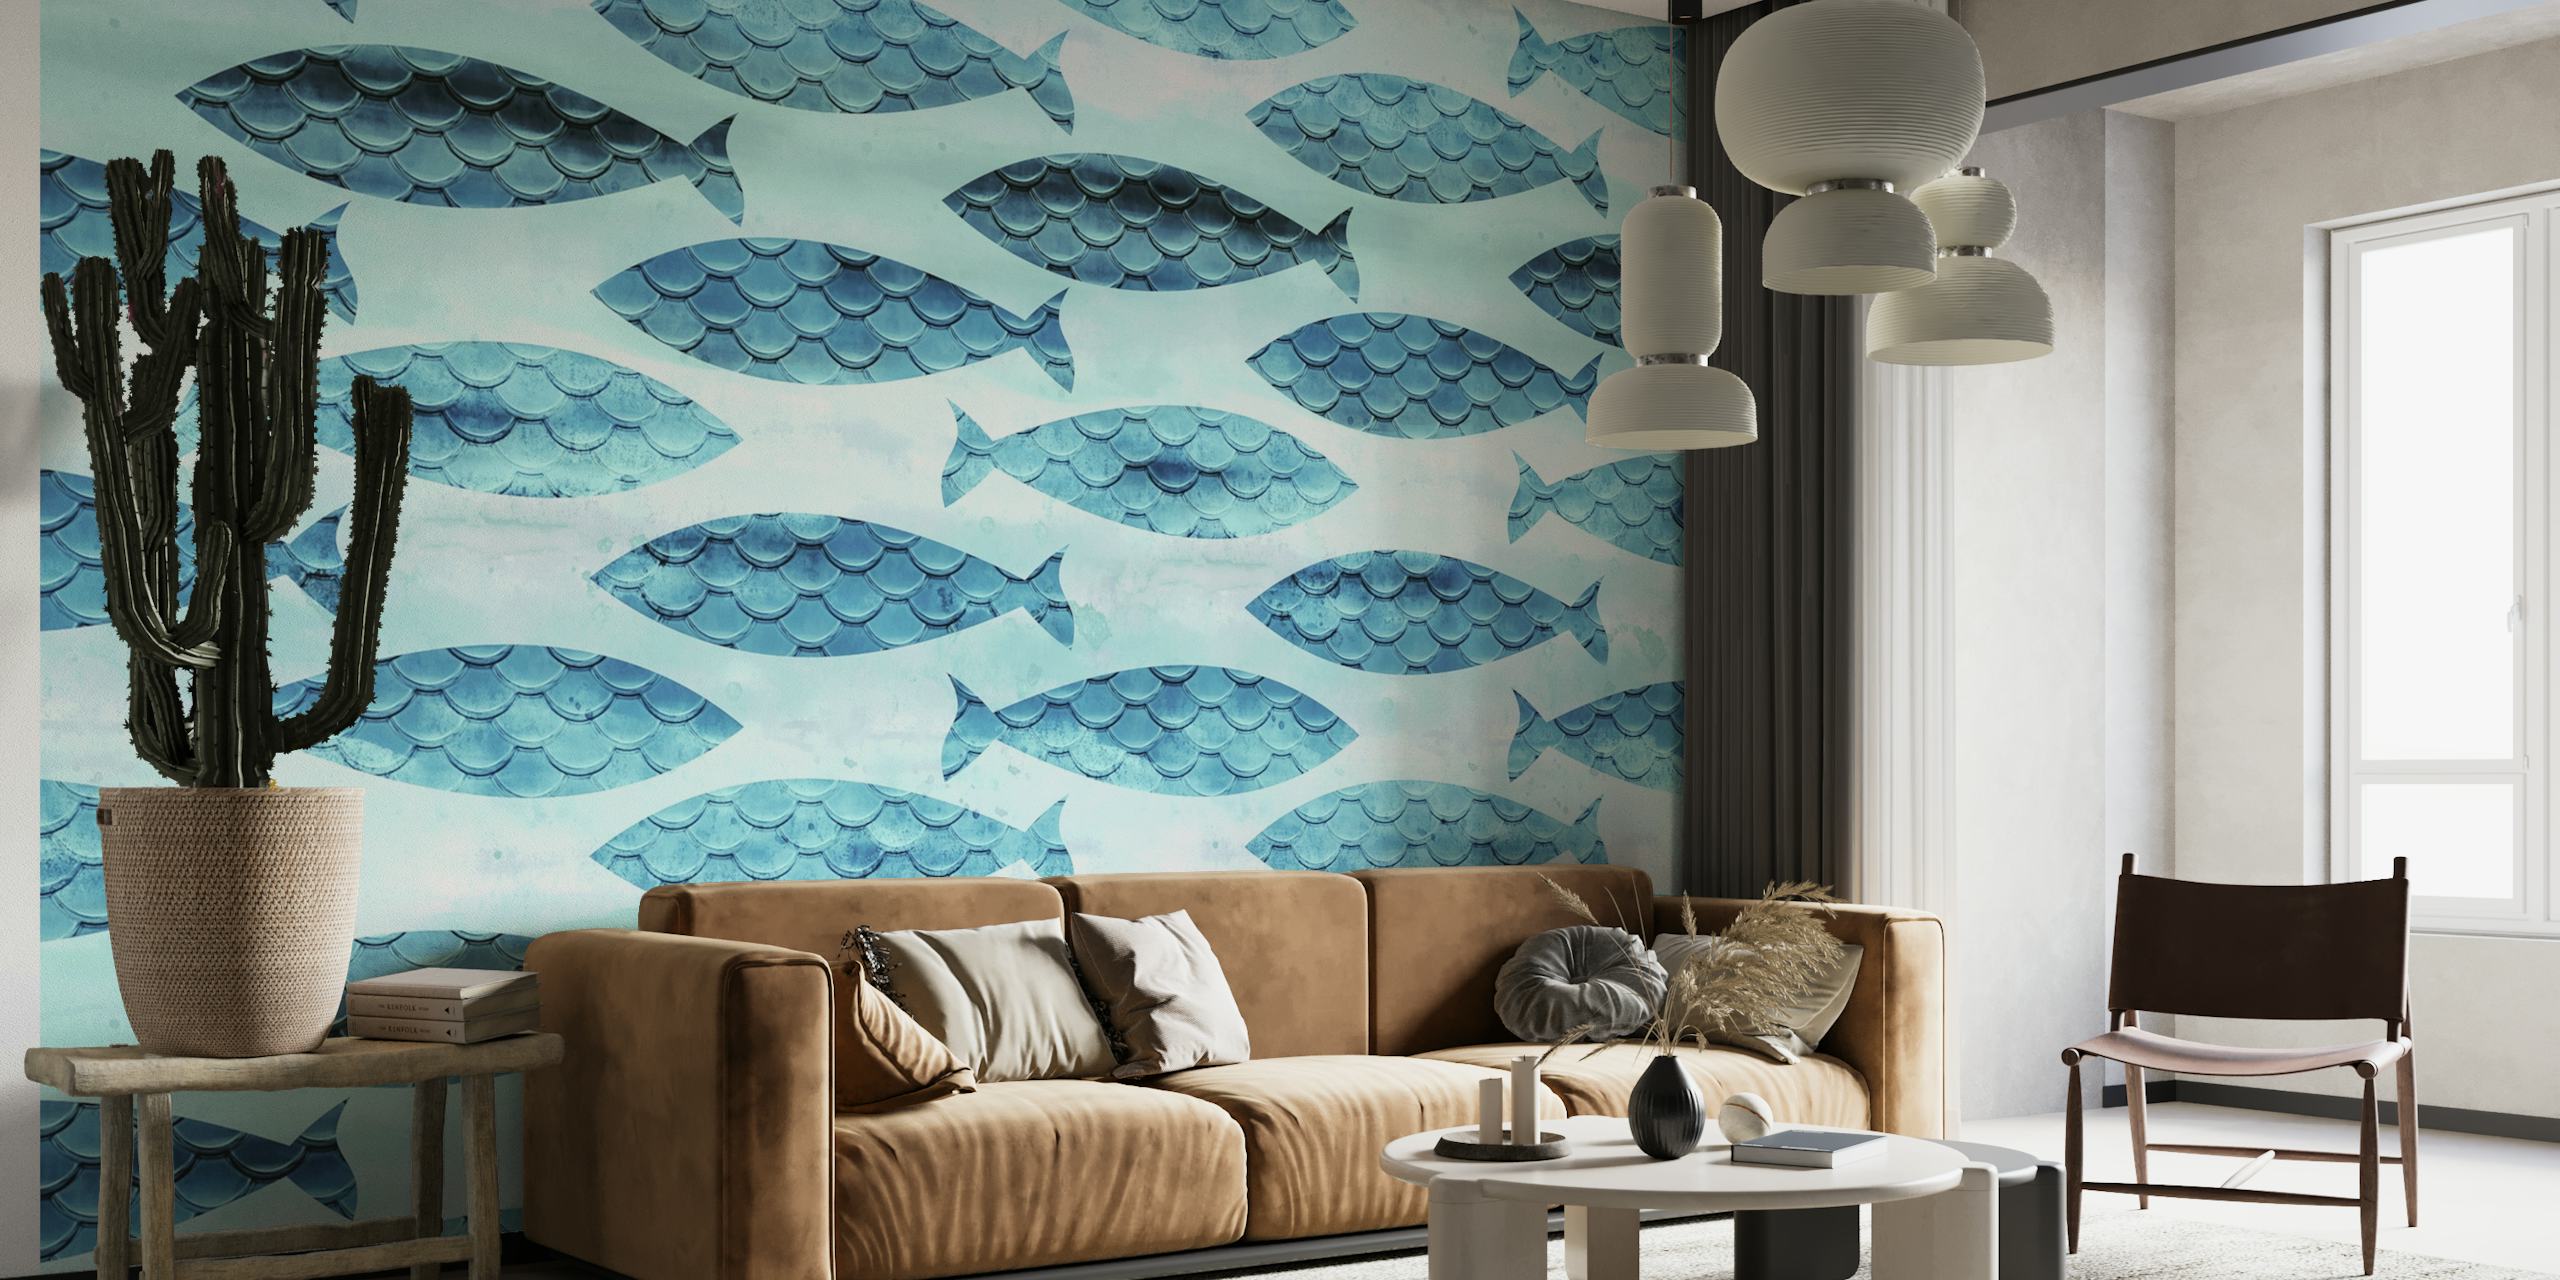 Fotomural con estampado de peces turquesa y blanco para decoración de interiores